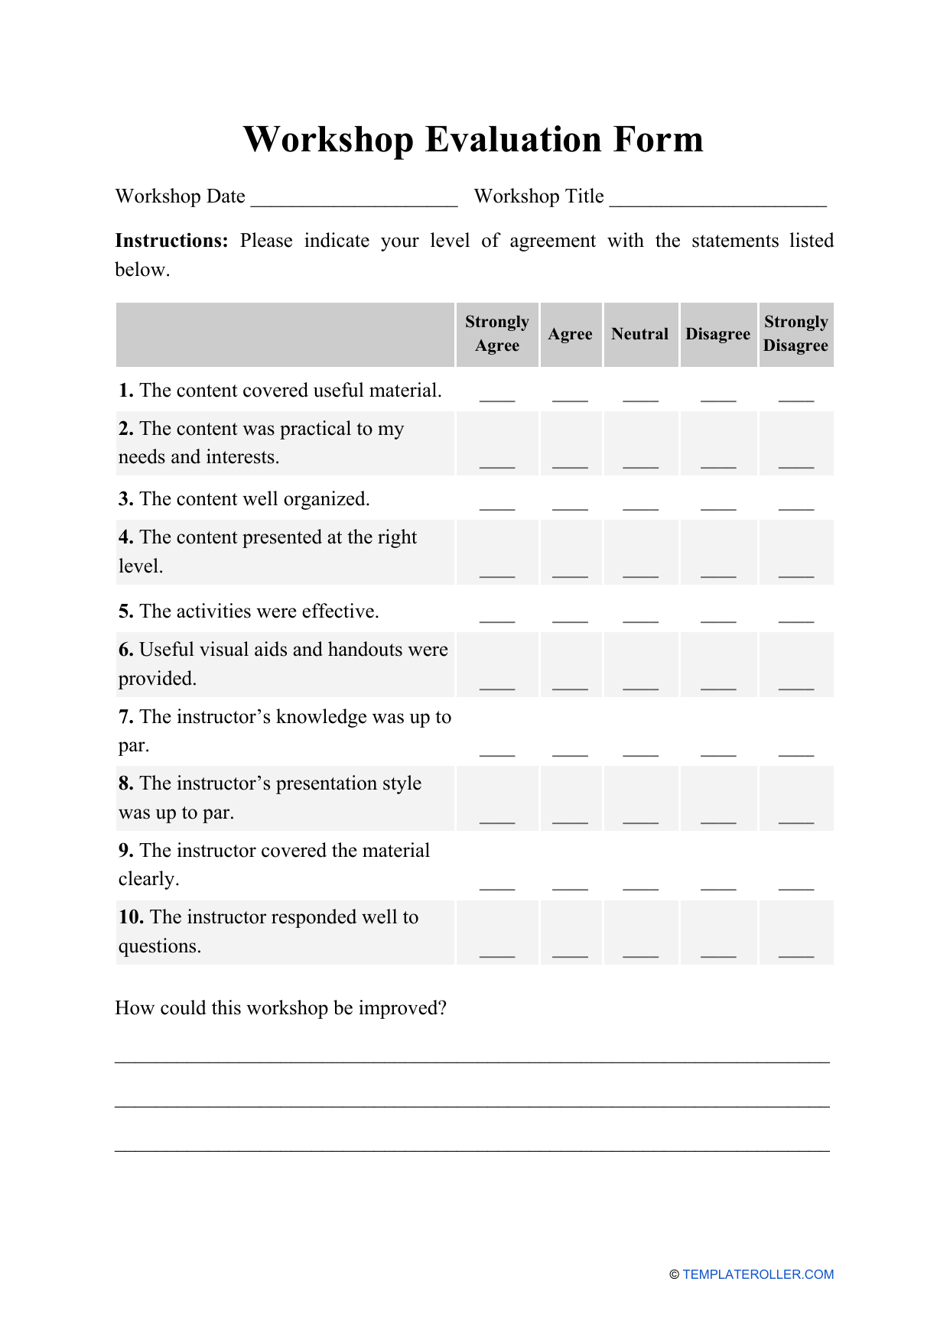 Workshop evaluation form